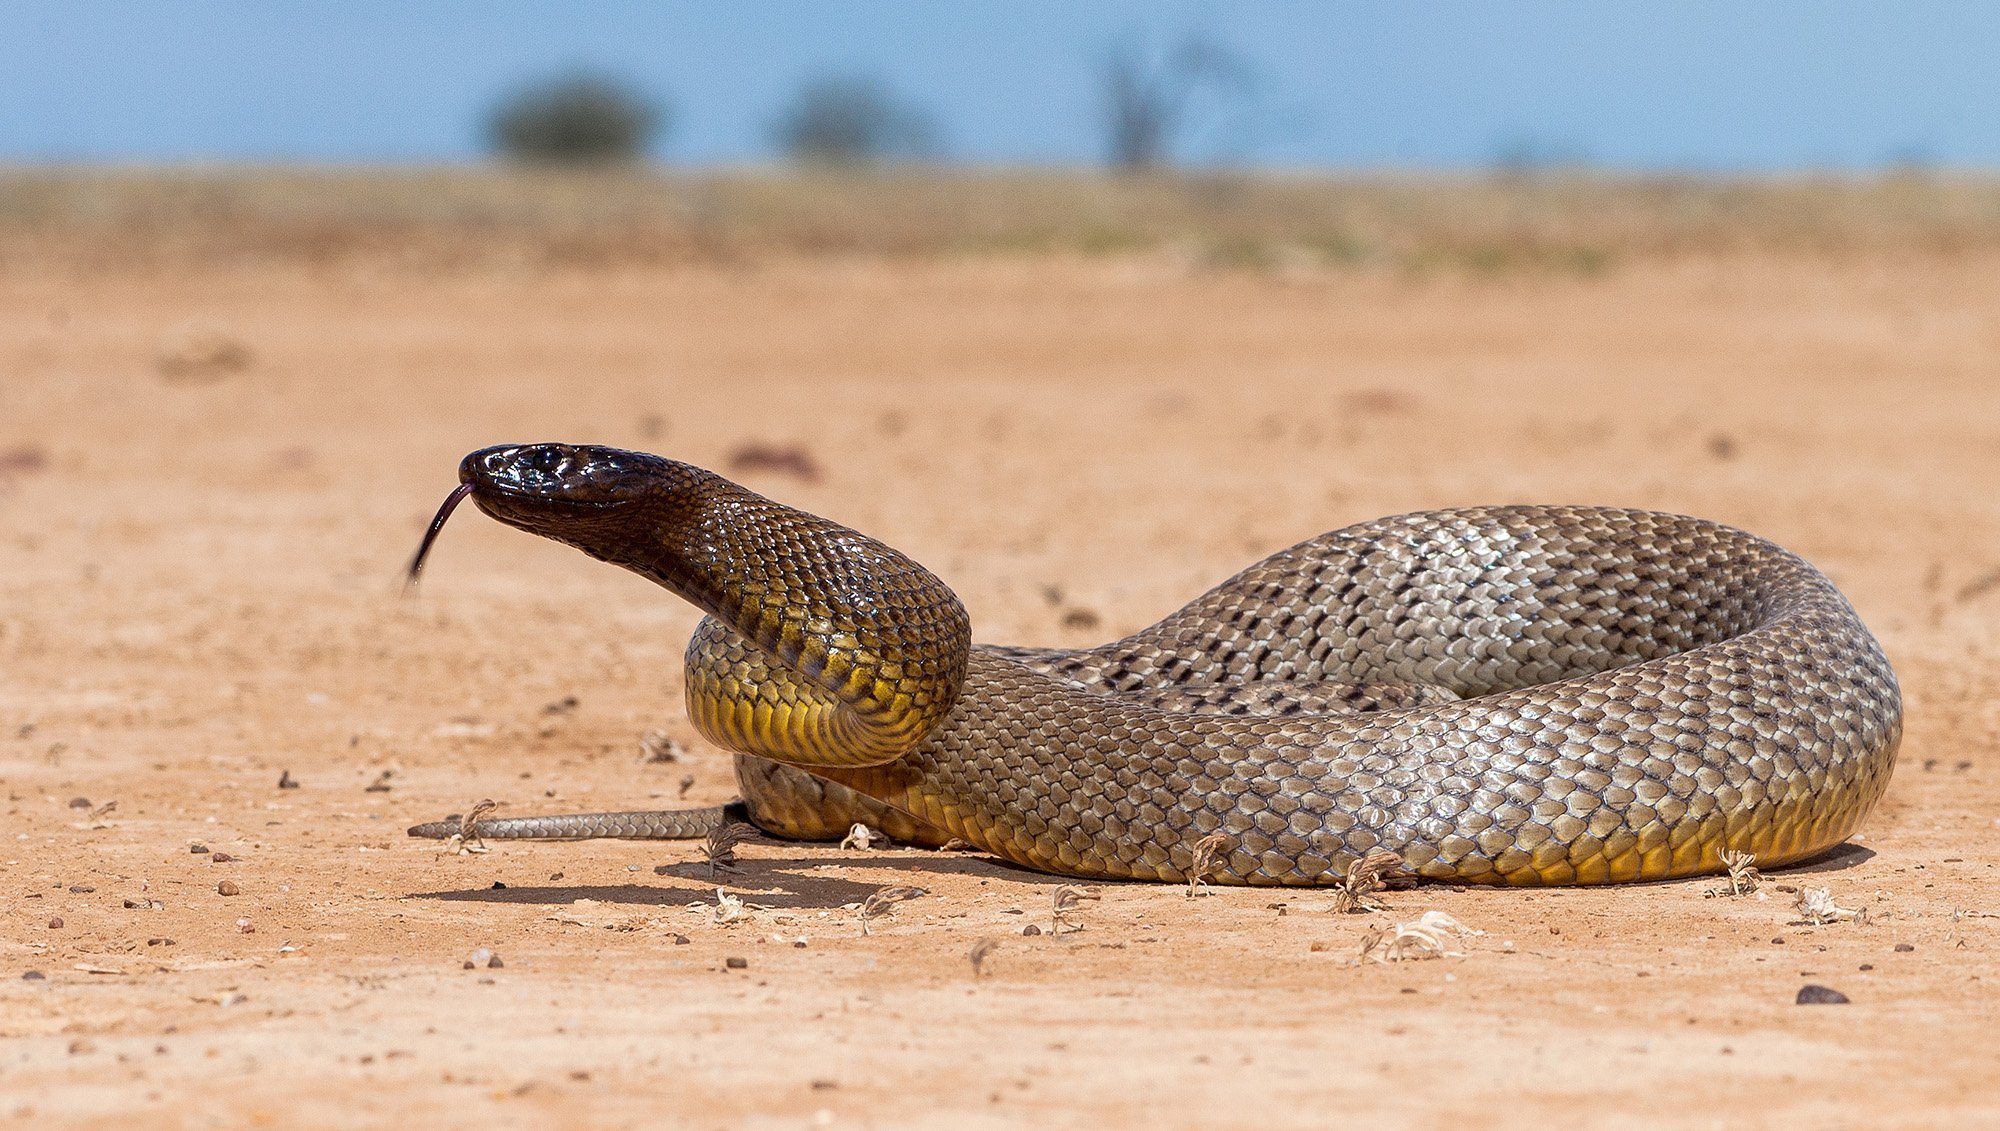 inland taipan most venomous snake